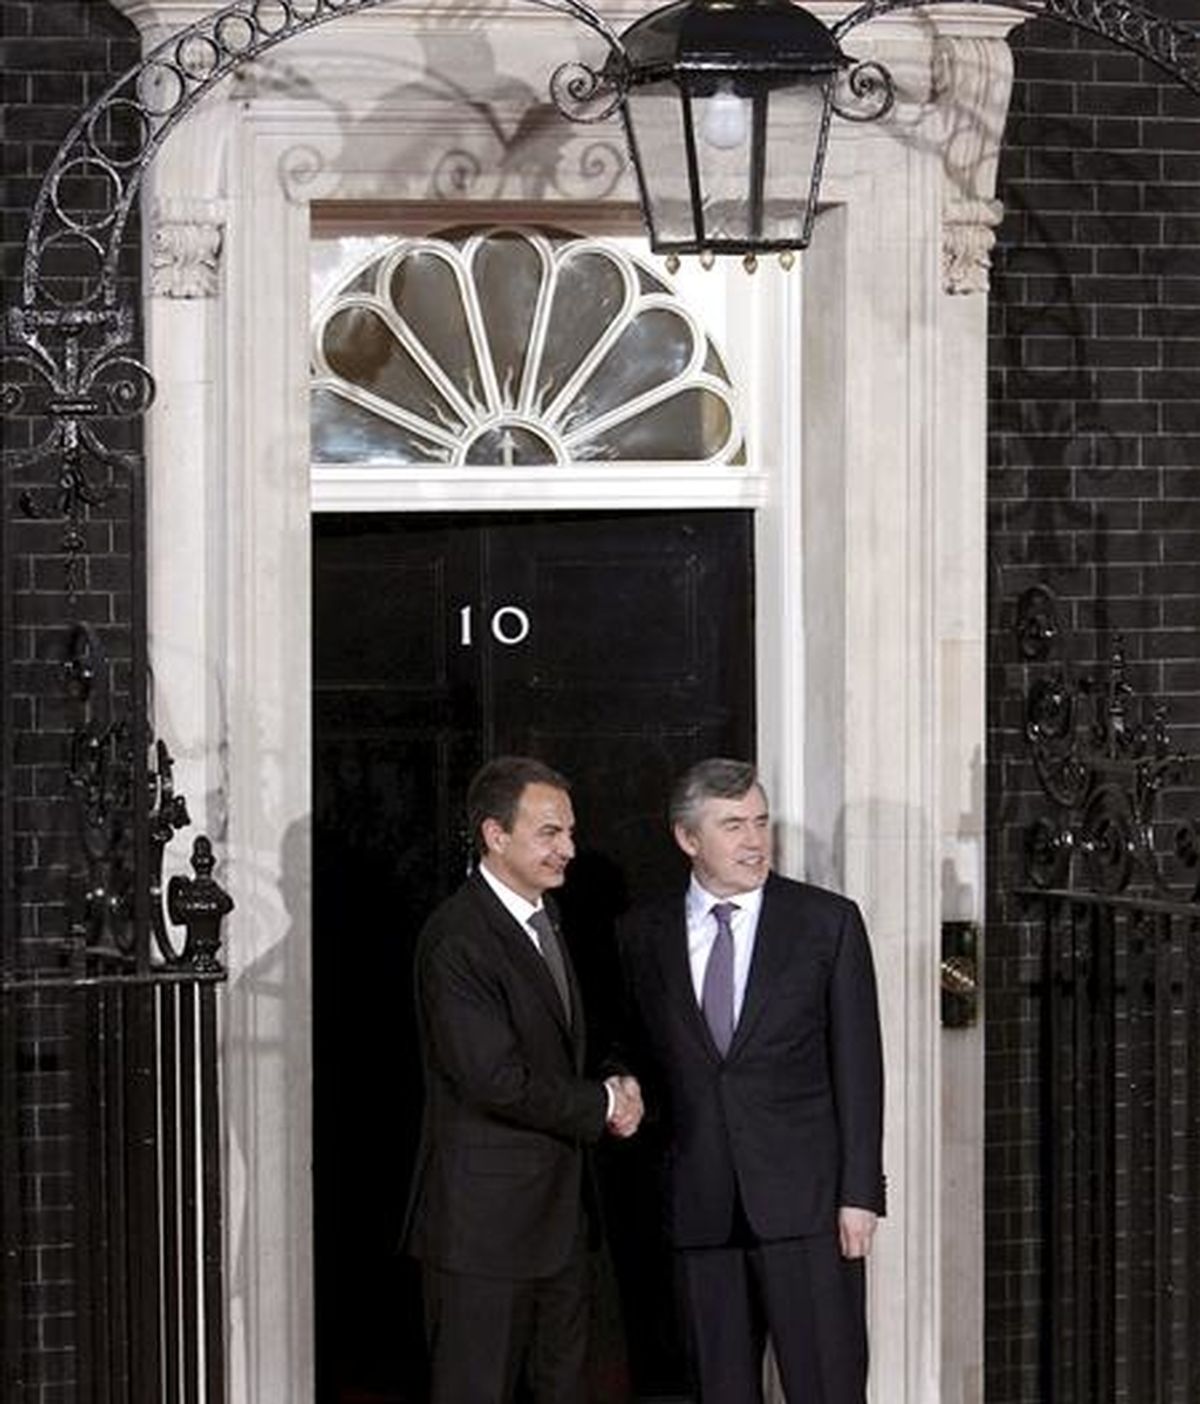 El presidente del Gobierno español, José Luis Rodríguez Zapatero (i) saluda al primer ministro británico, Gordon Brown, a su llegada a la residencia oficial de éste en Downing Street, en Londres, ciudad en la que se celebrará mañana la cumbre del G-20 en la que se abordará la crisis económica actual. EFE